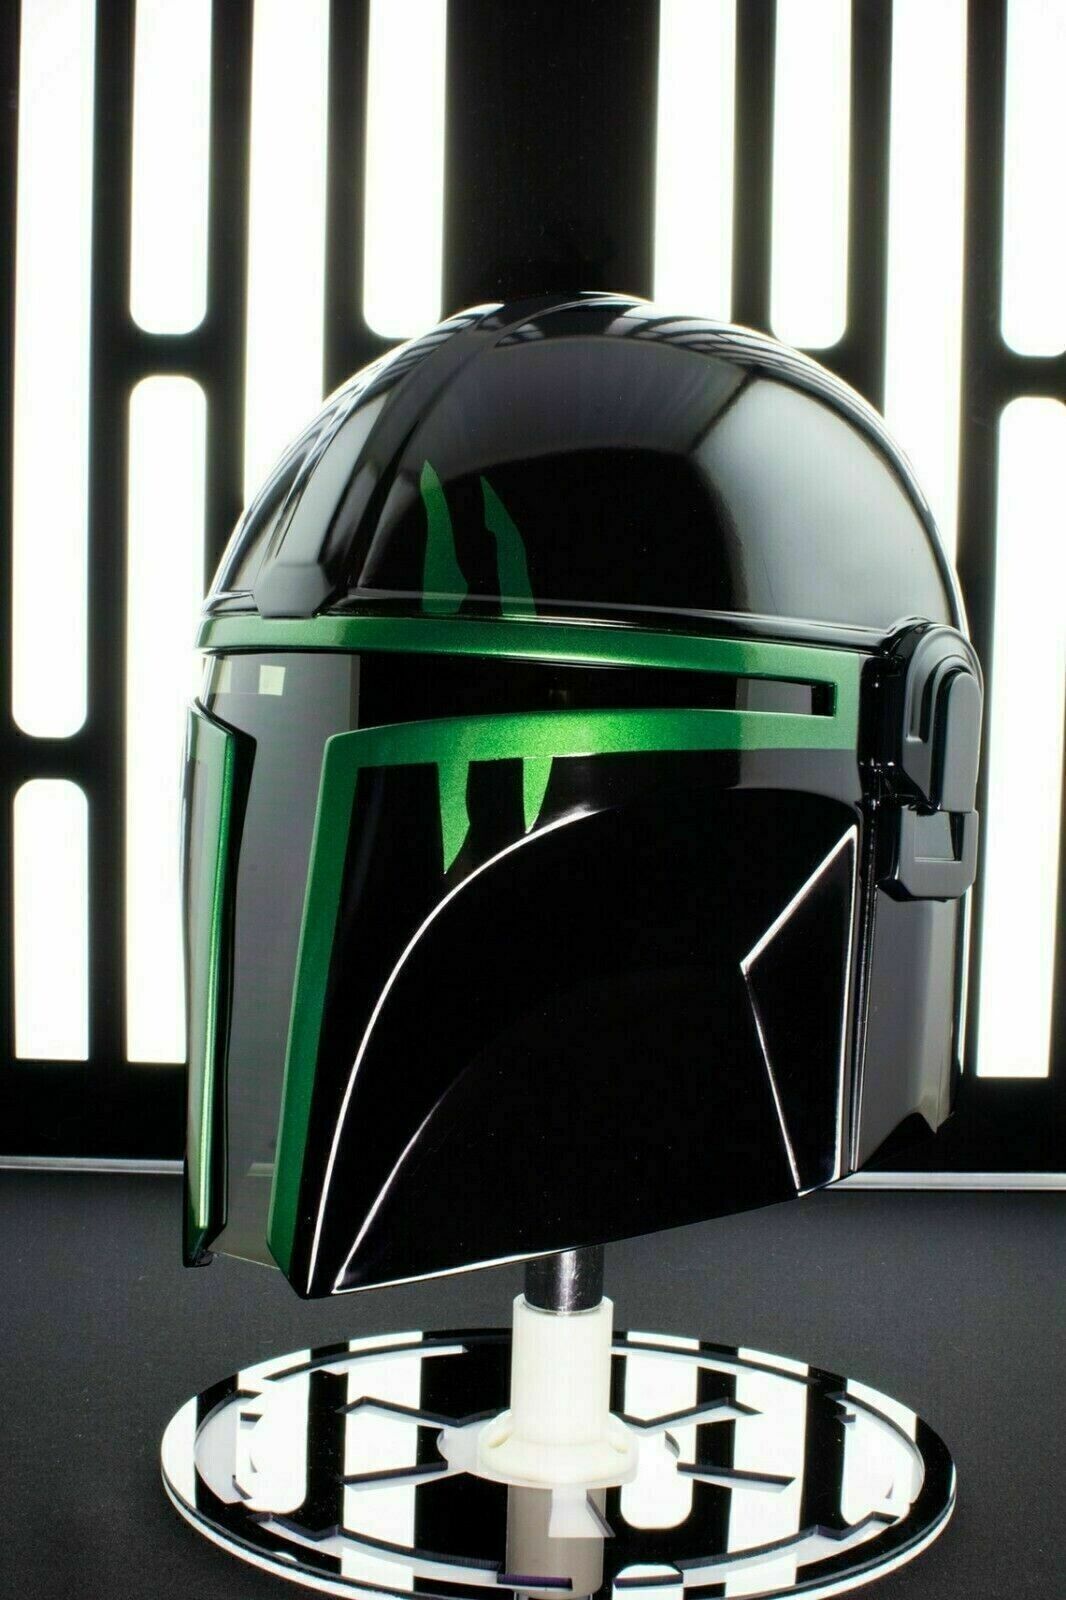 Mandalorian Steel Helmet Medieval Star Wars Black Series Black Green Wearable